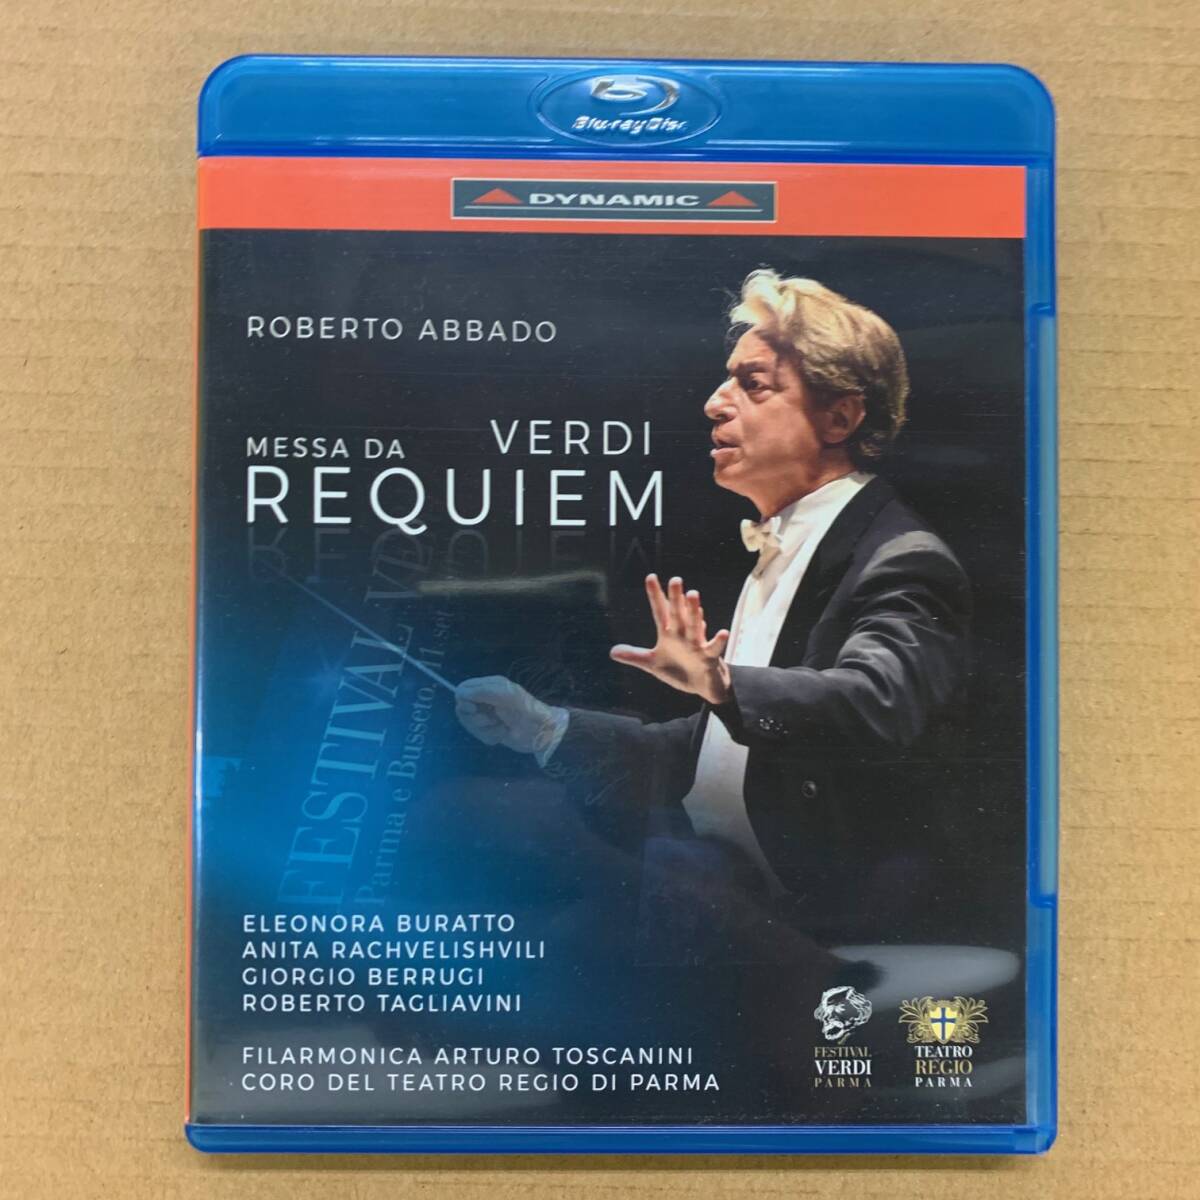 [Blu-ray] ヴェルディ - レクイエム [8007144578954] 輸入盤/アバド/ヴェルディ音楽祭2020/クラシック/Verdi/日本語字幕付_画像1